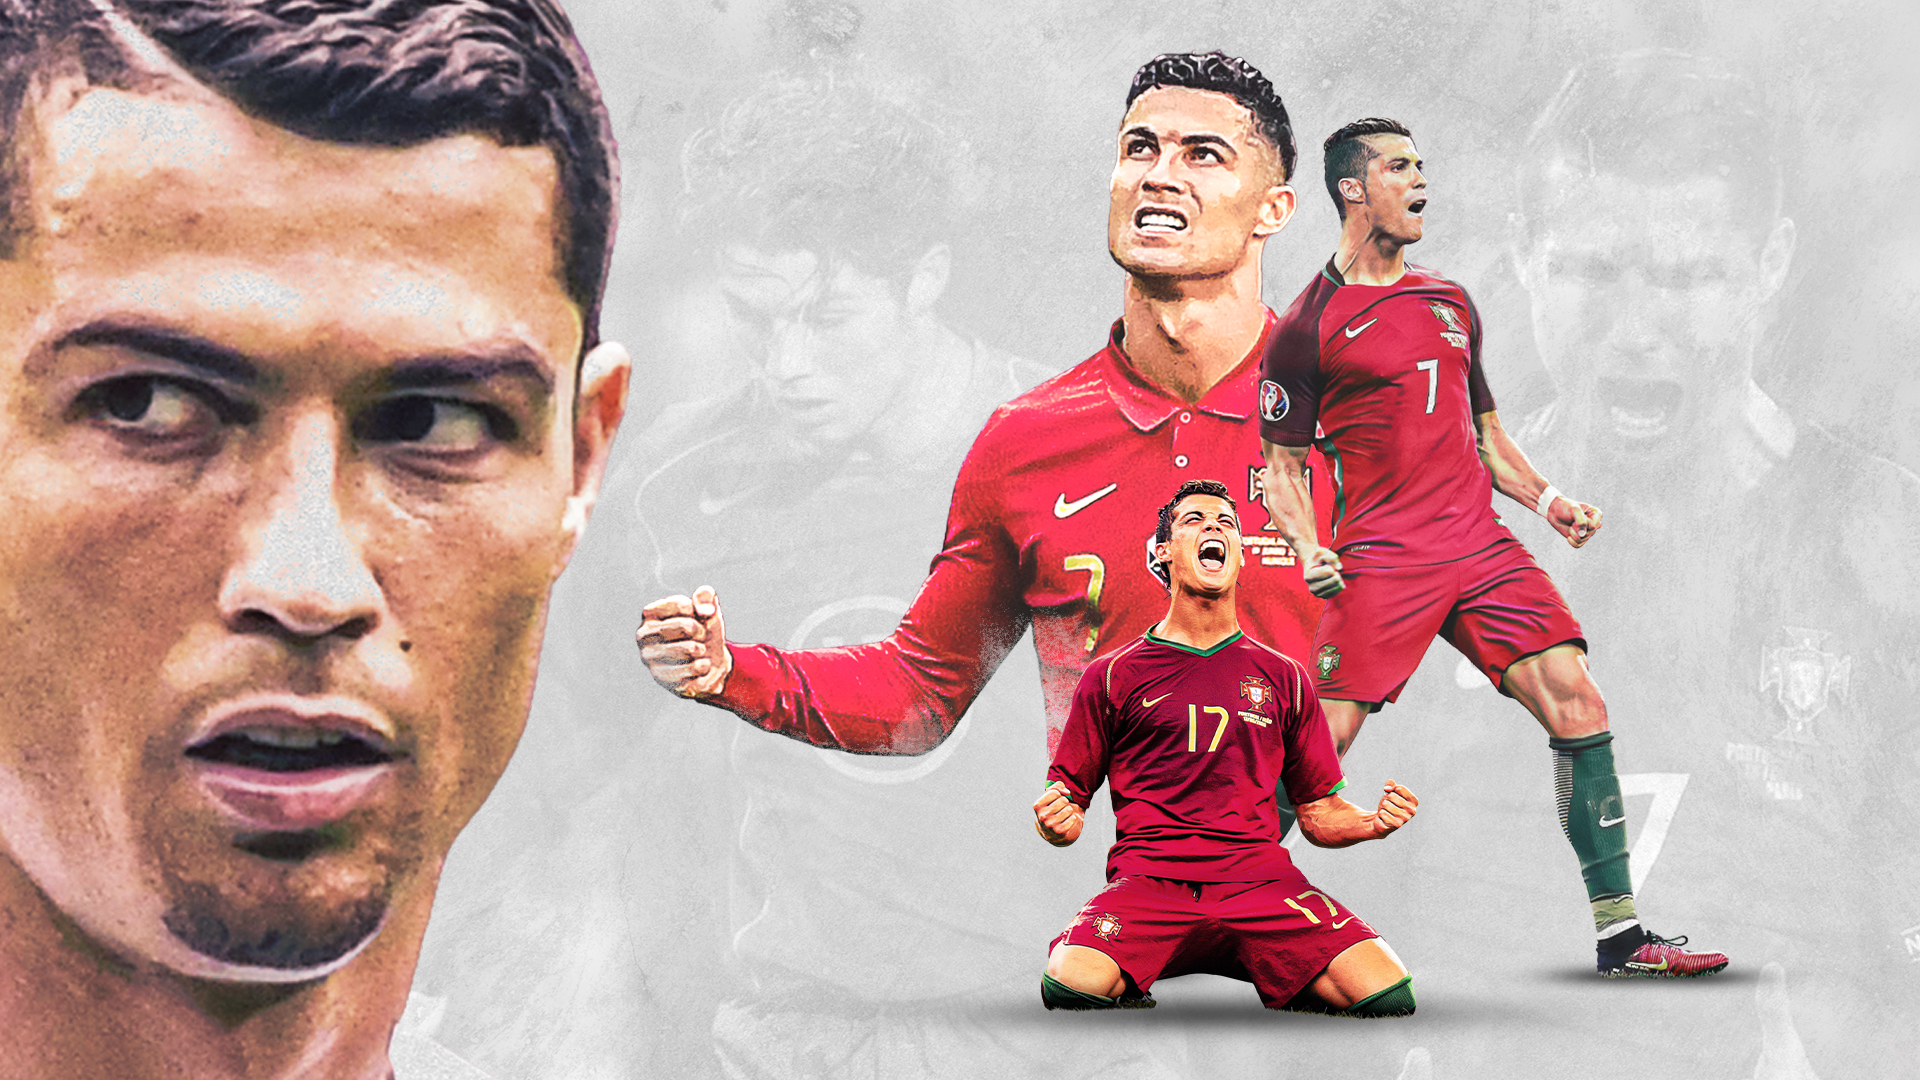 Ảnh nền Ronaldo: Hãy truy cập ngay vào mục ảnh nền Ronaldo để cập nhật những khoảnh khắc đẹp nhất của siêu sao bóng đá hàng đầu thế giới. Với ảnh nền Ronaldo đầy sức sống và hình ảnh đẹp mắt, bạn sẽ có được một trải nghiệm thú vị trong việc tìm kiếm hình nền độc đáo cho thiết bị của mình.